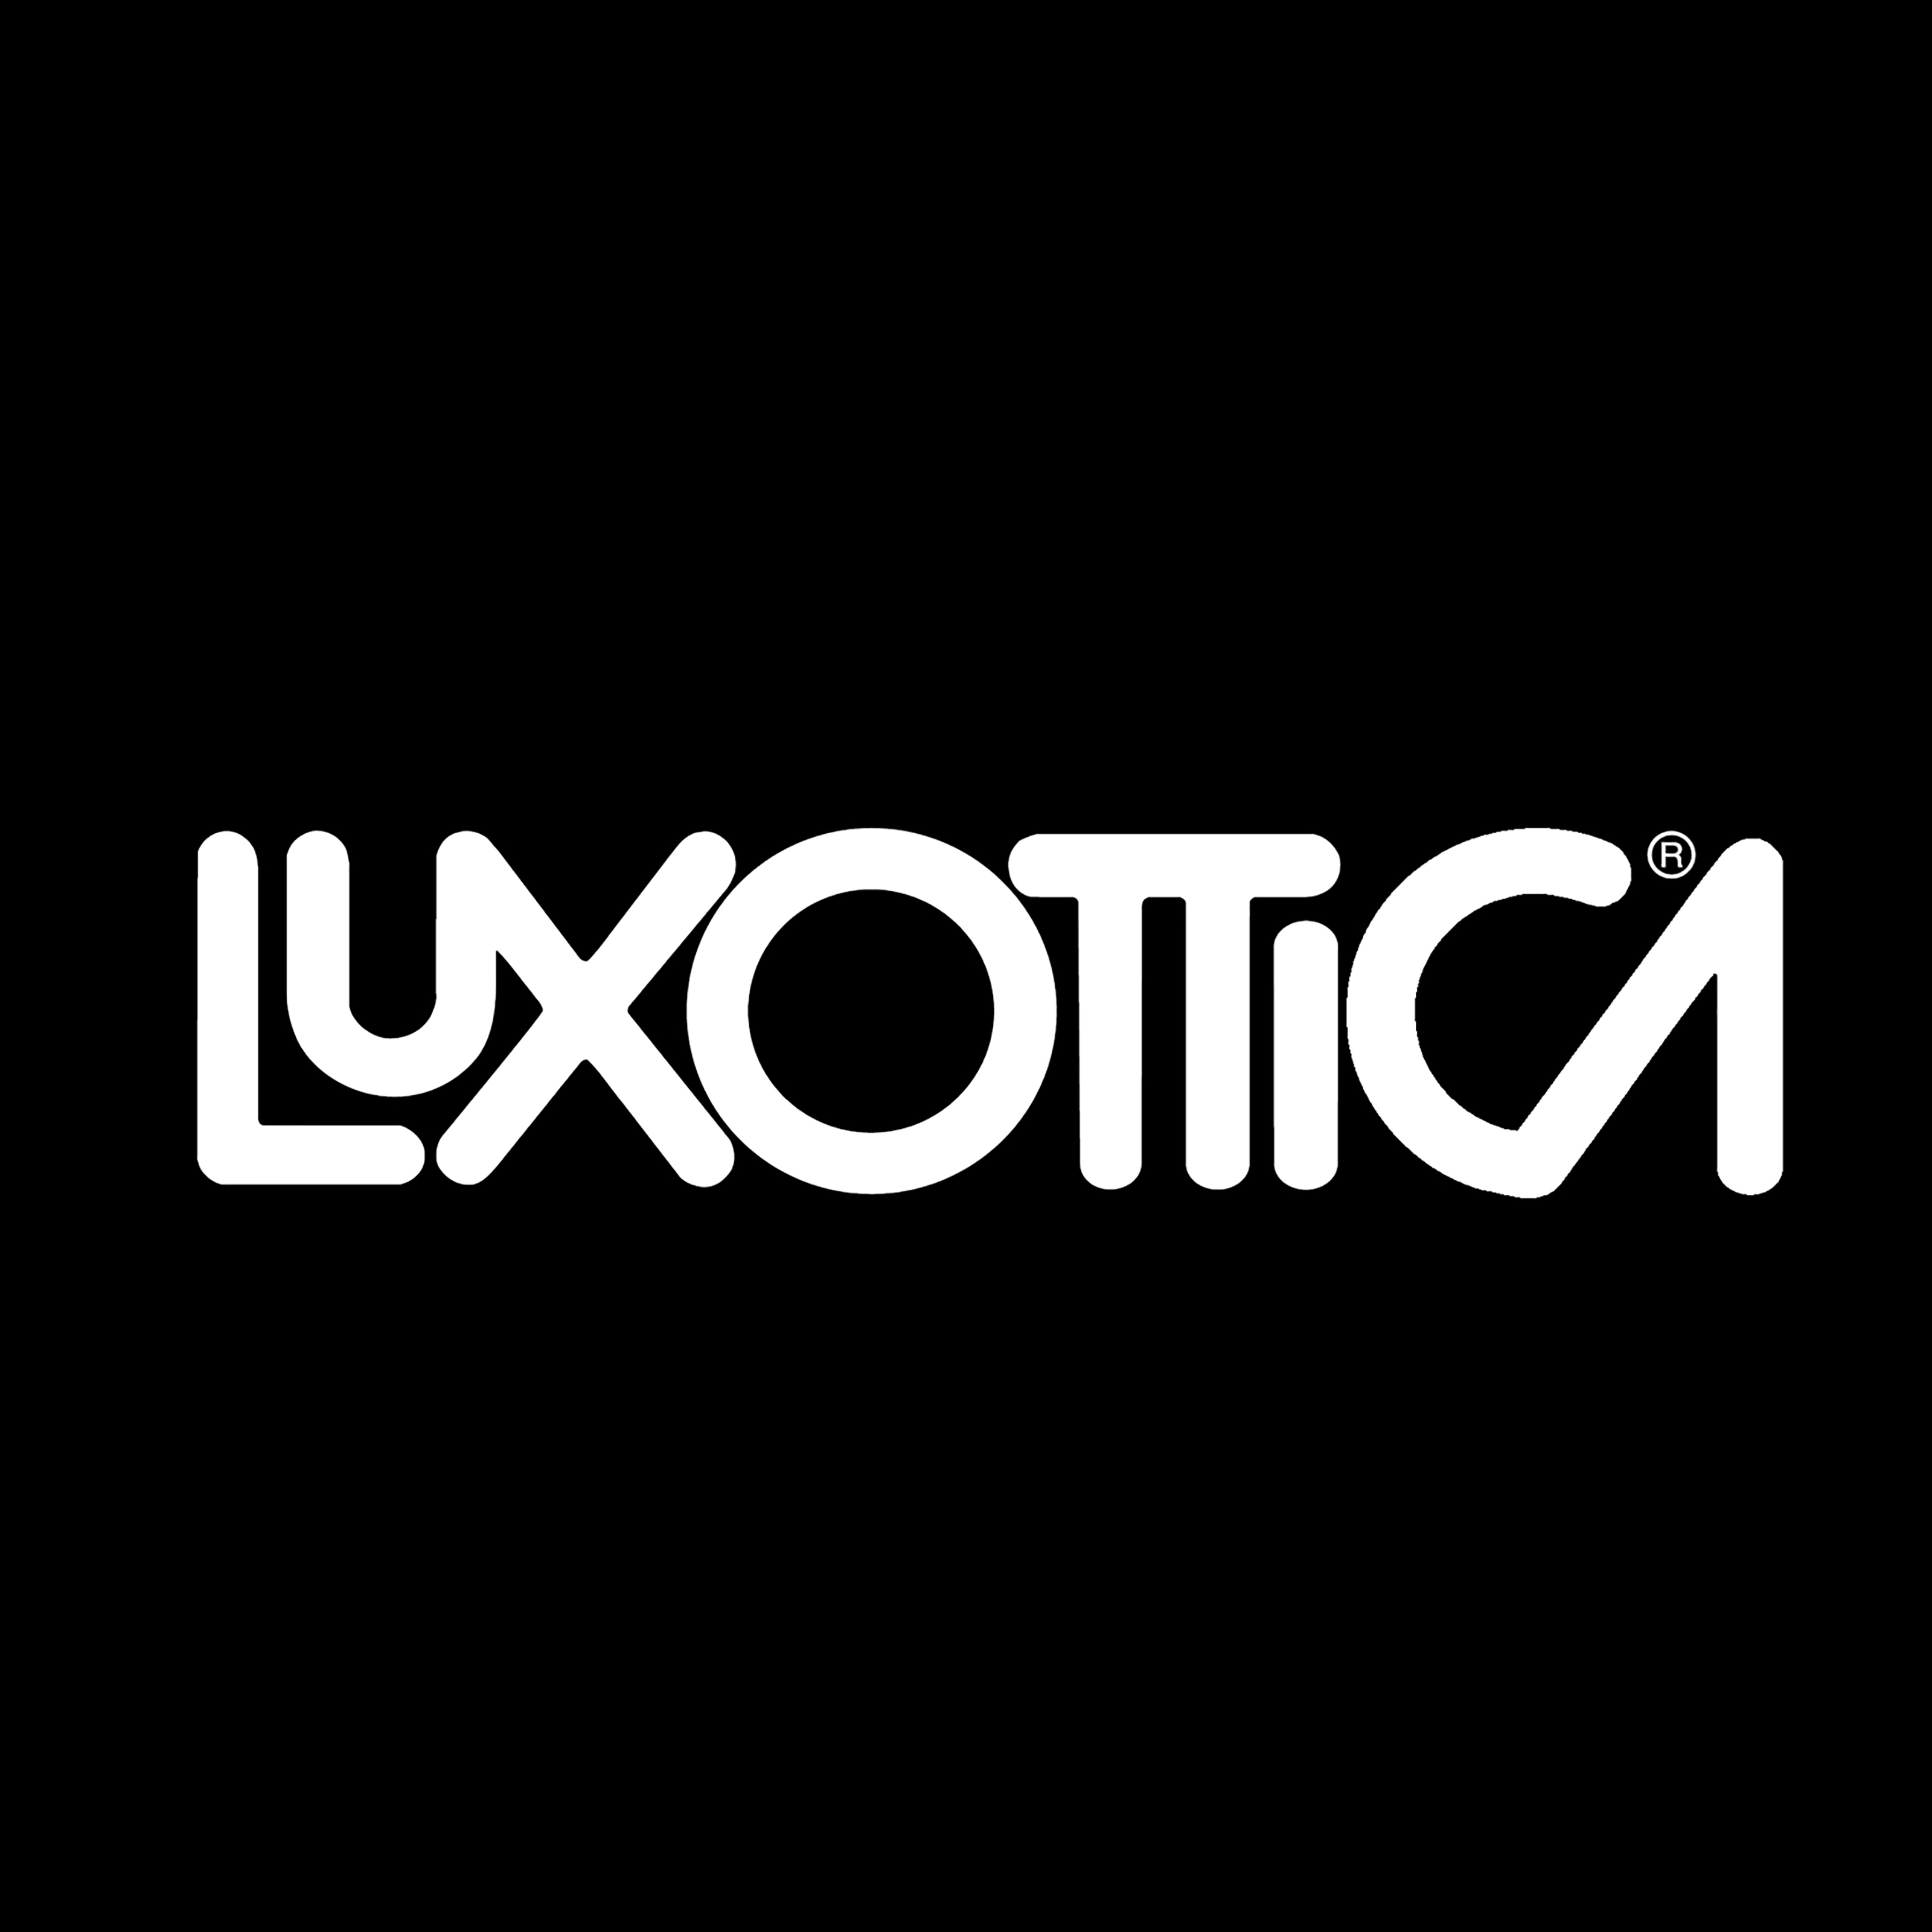 LUXOTTICA - Luxottica Days 2020